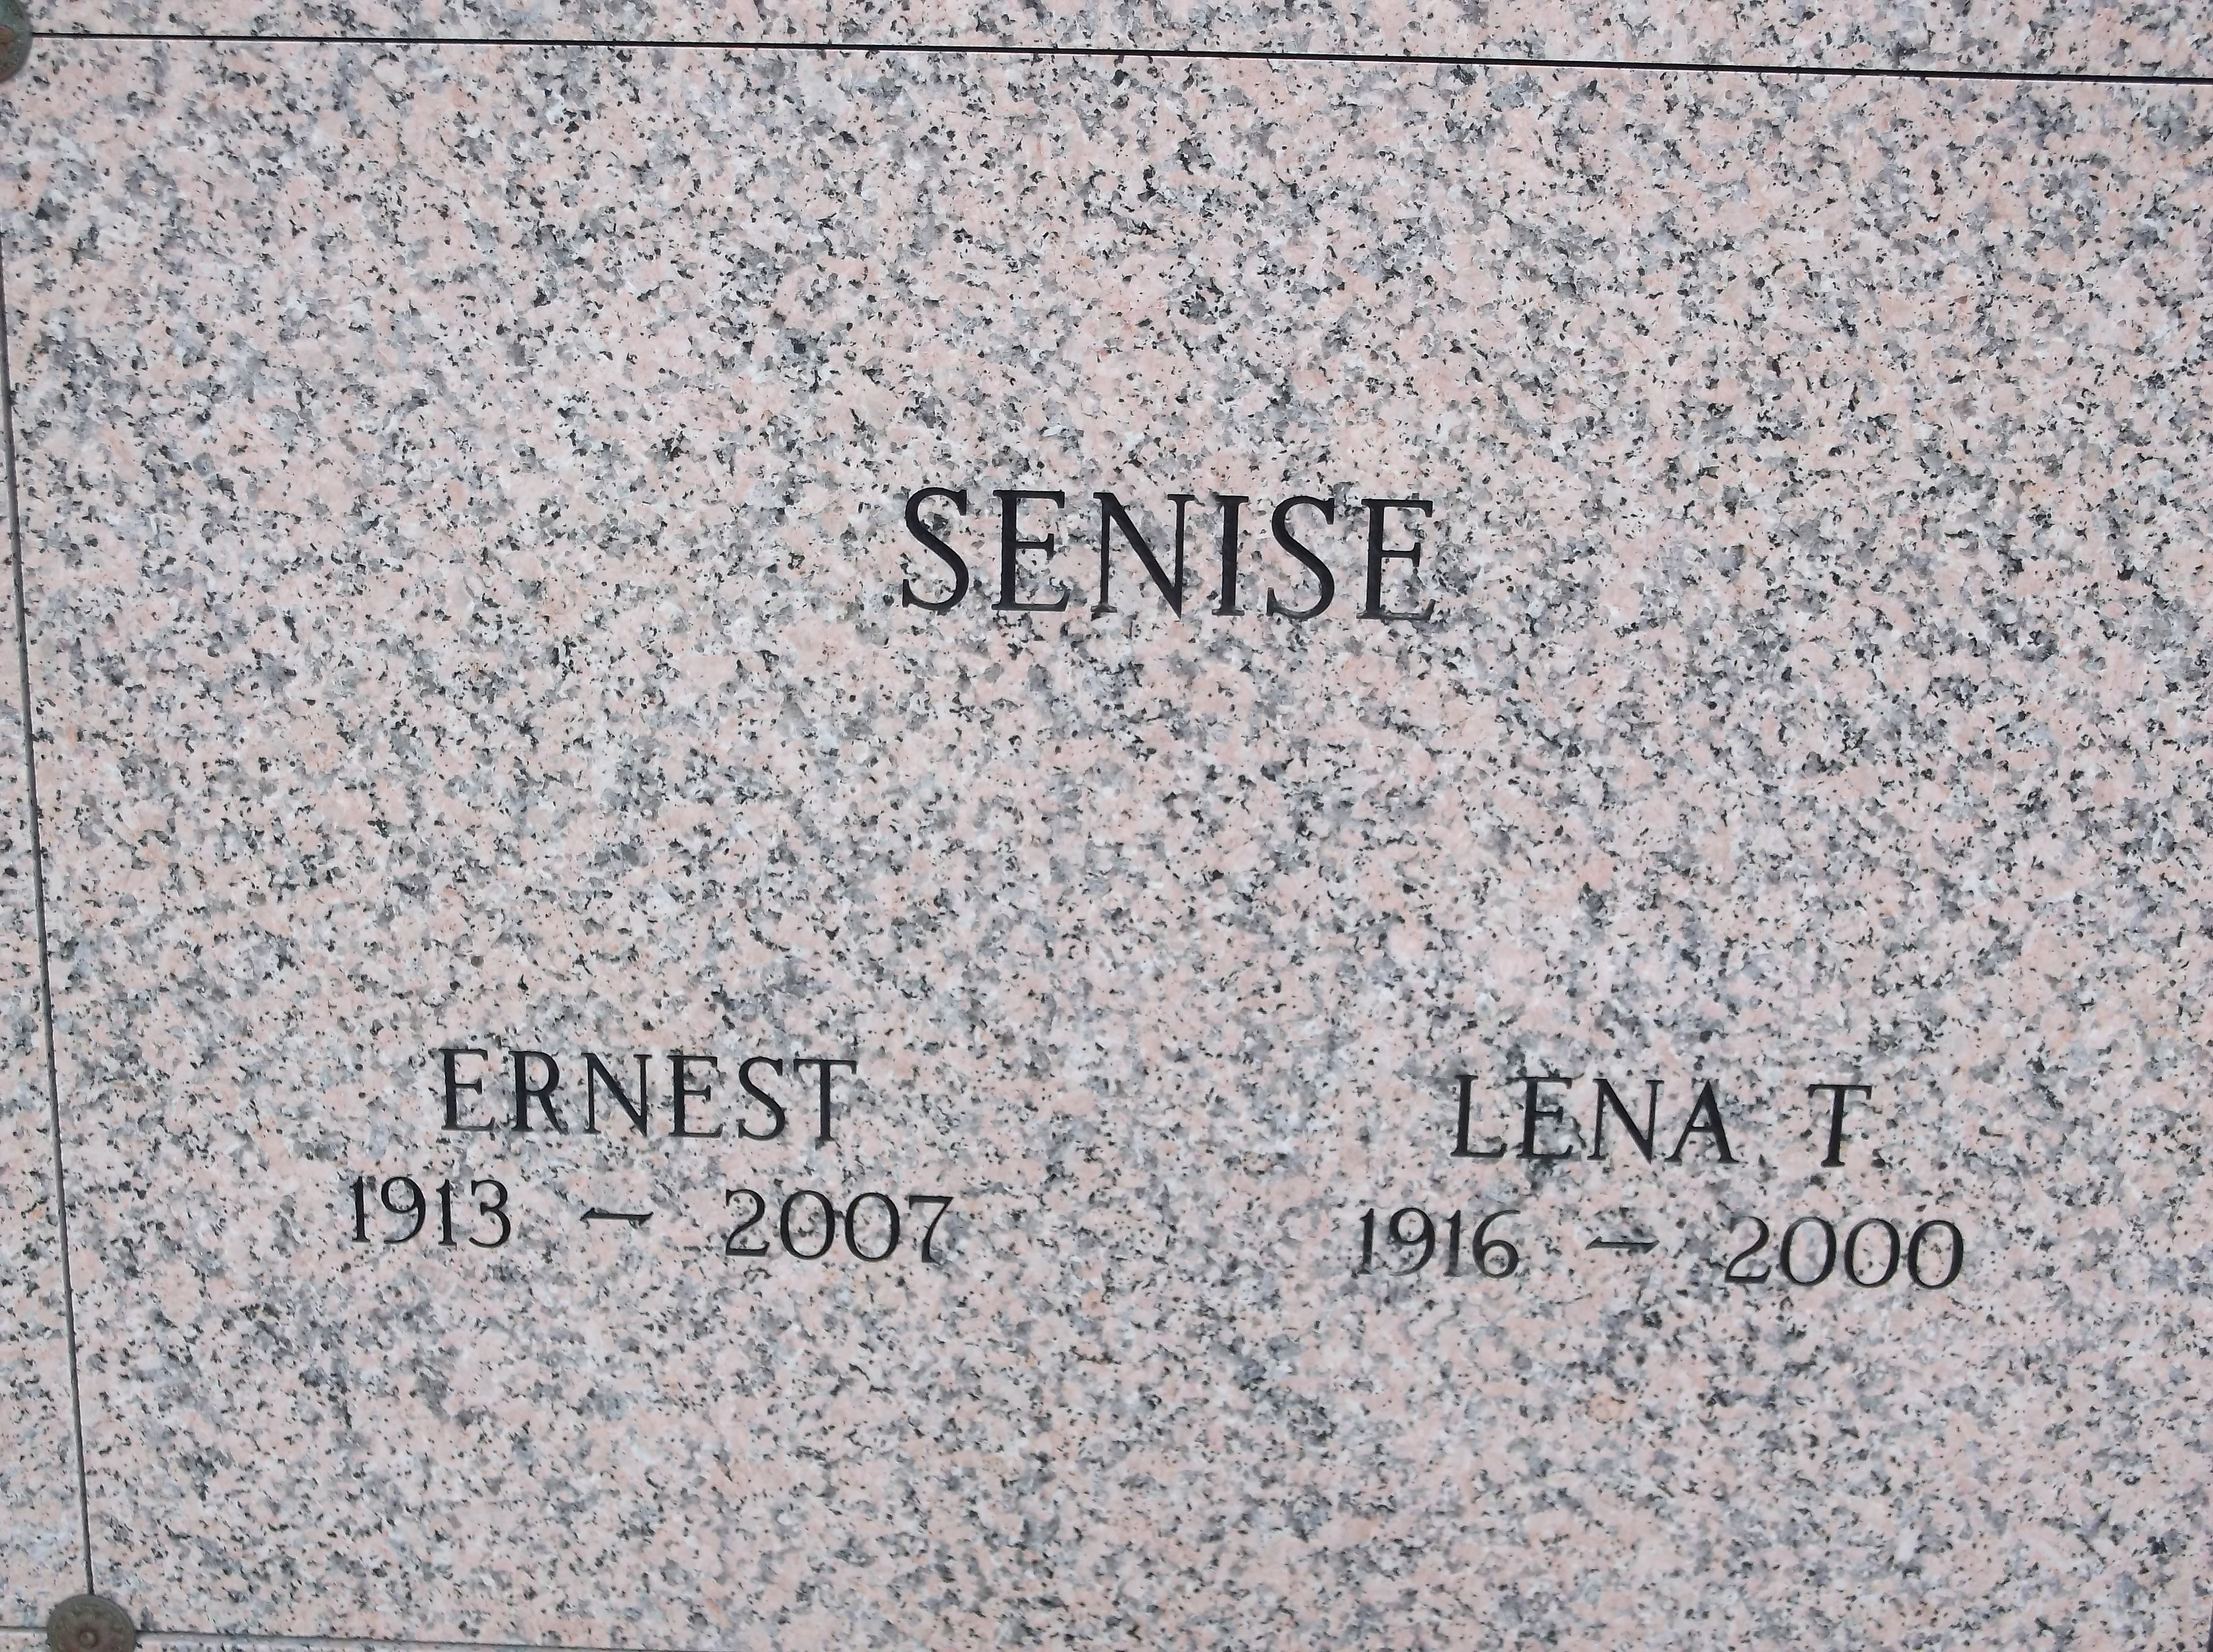 Ernest Senise